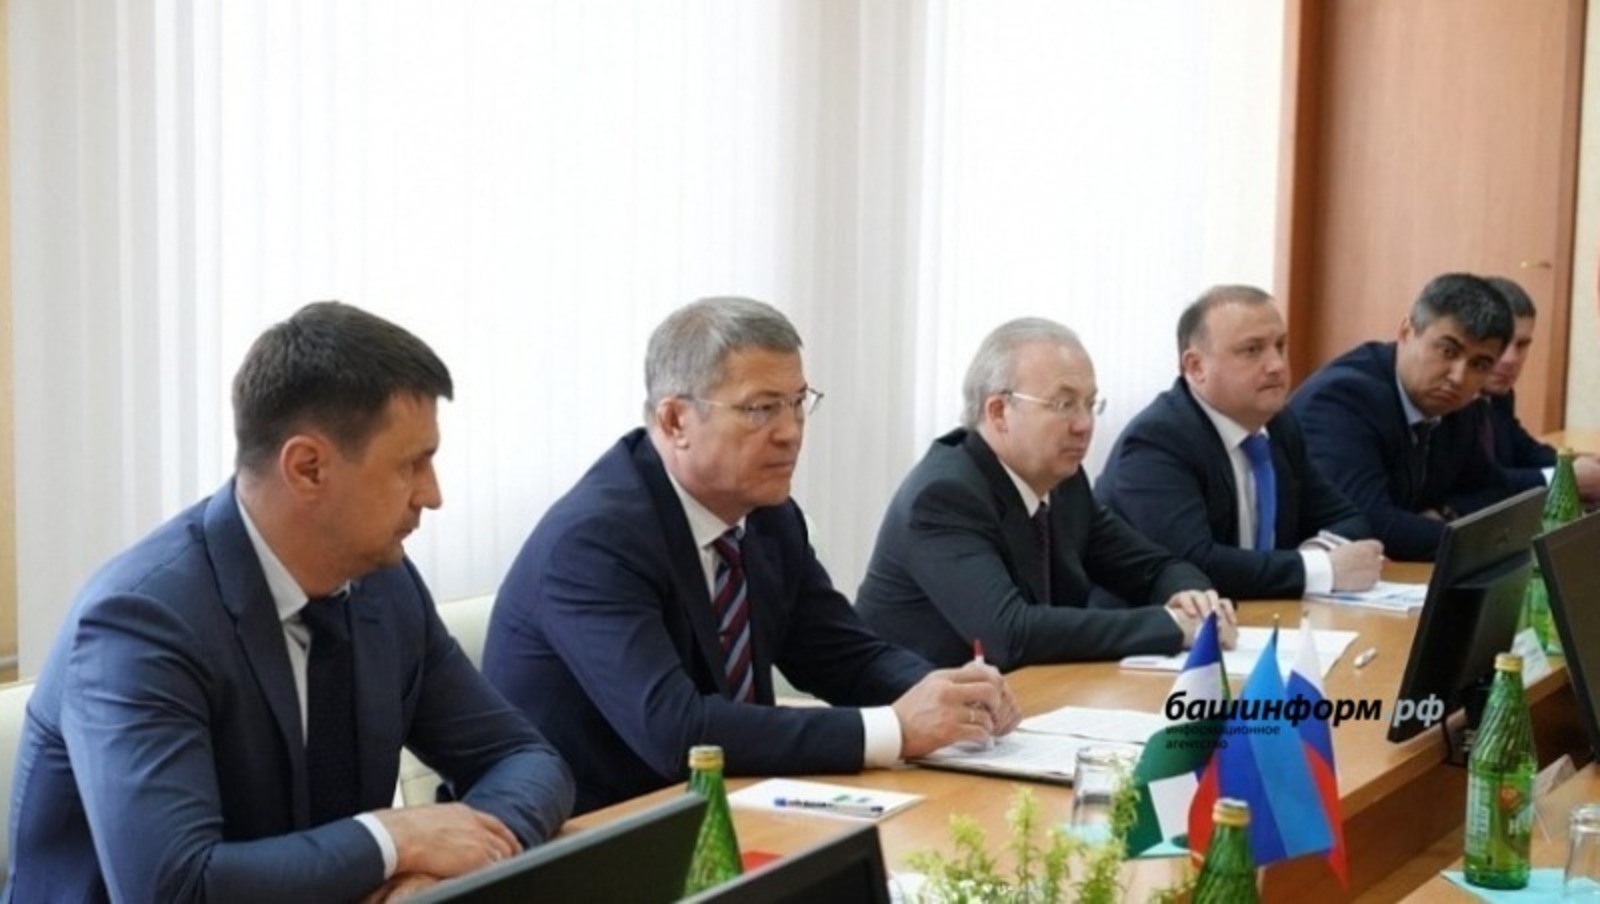 Мнение экспертных аналитиков по поводу визита руководителя Республики Башкортостан в Луганск